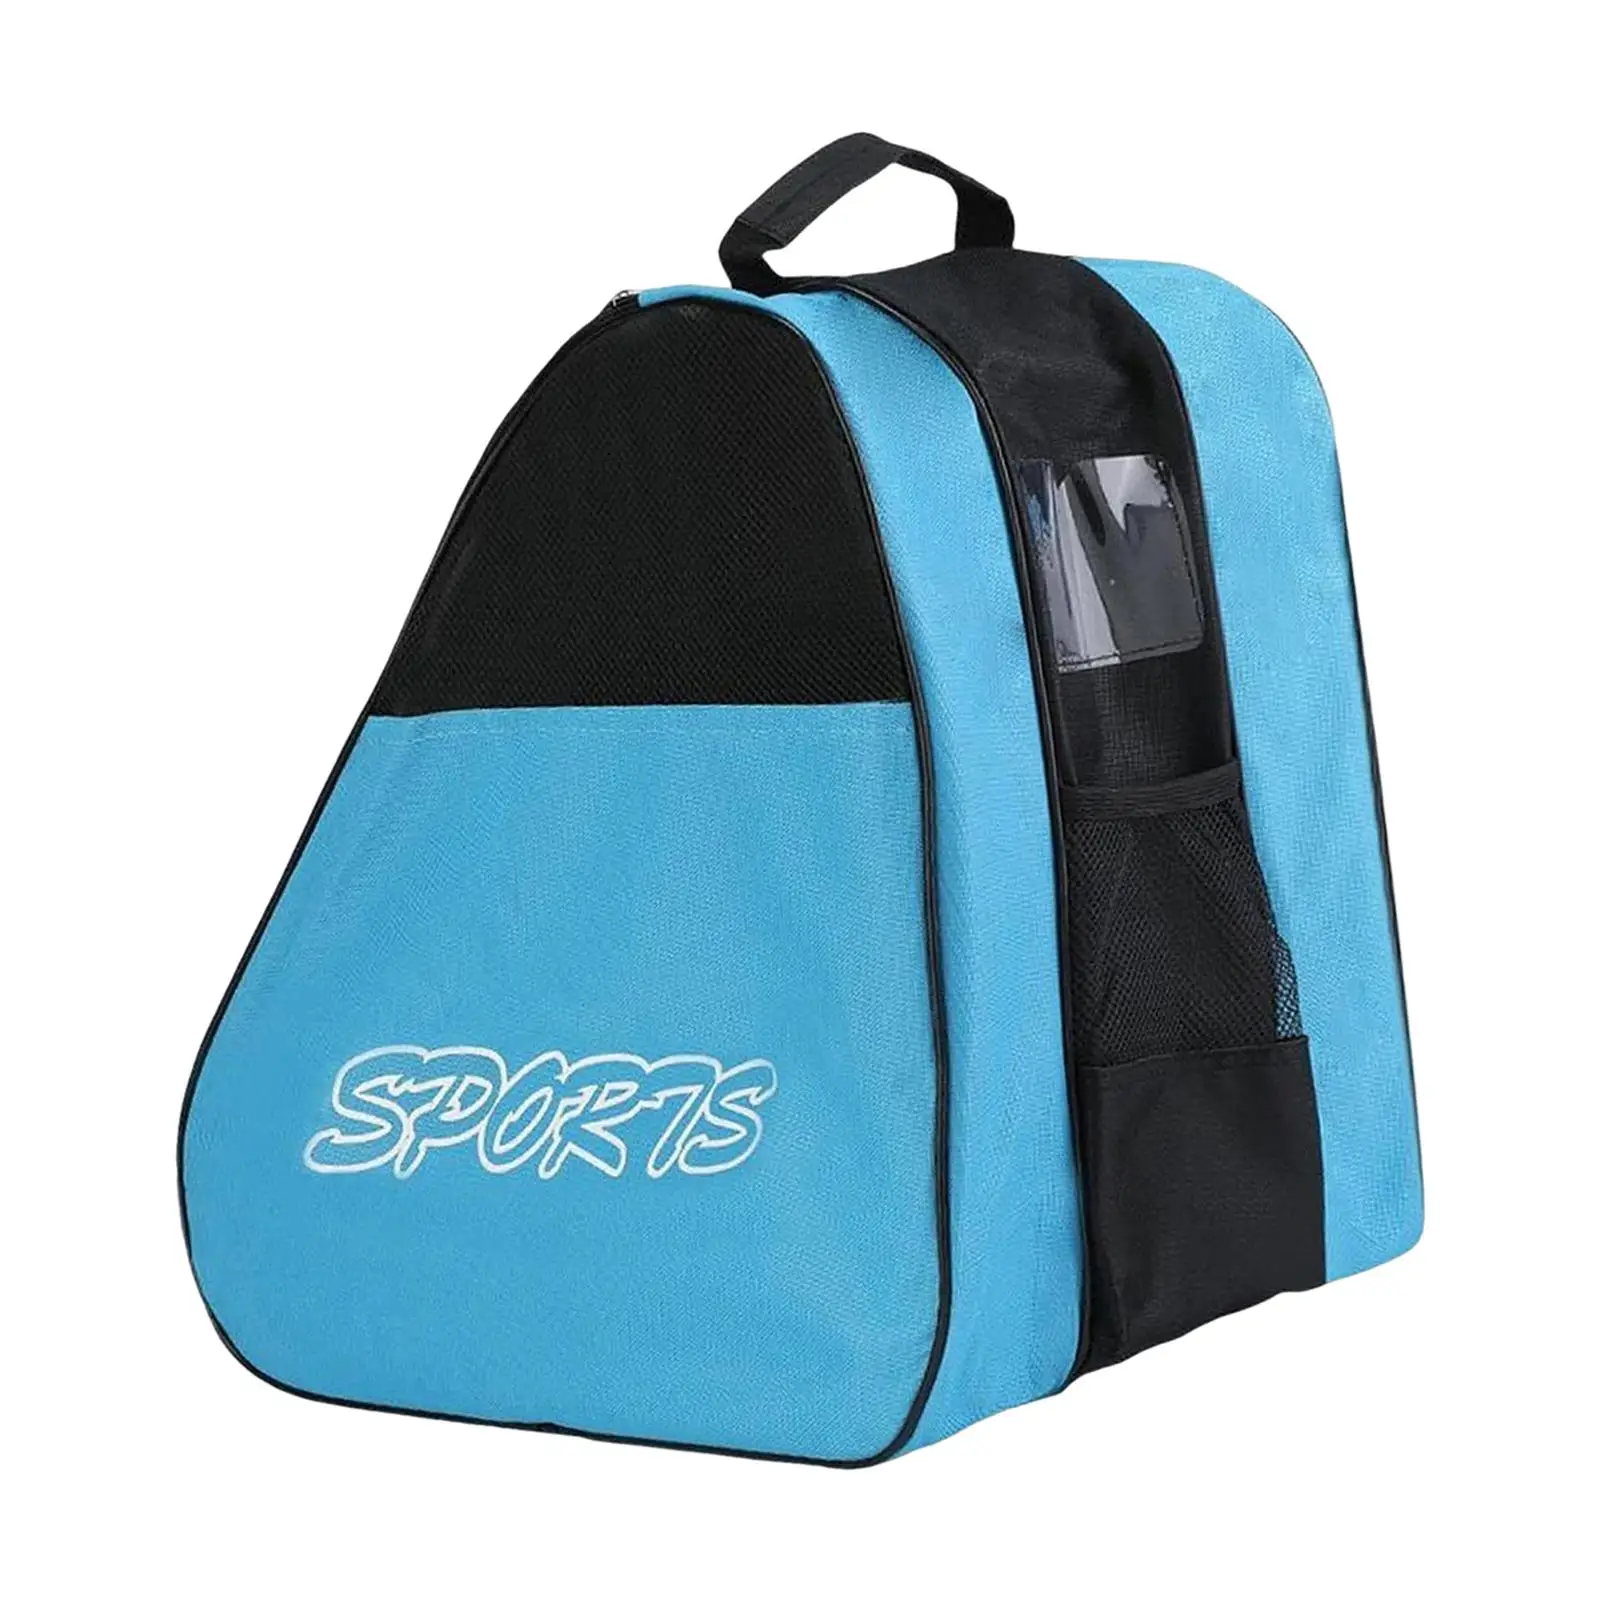 Roller Skate Bag Portable with Adjustable Shoulder Strap Skating Shoes Bag